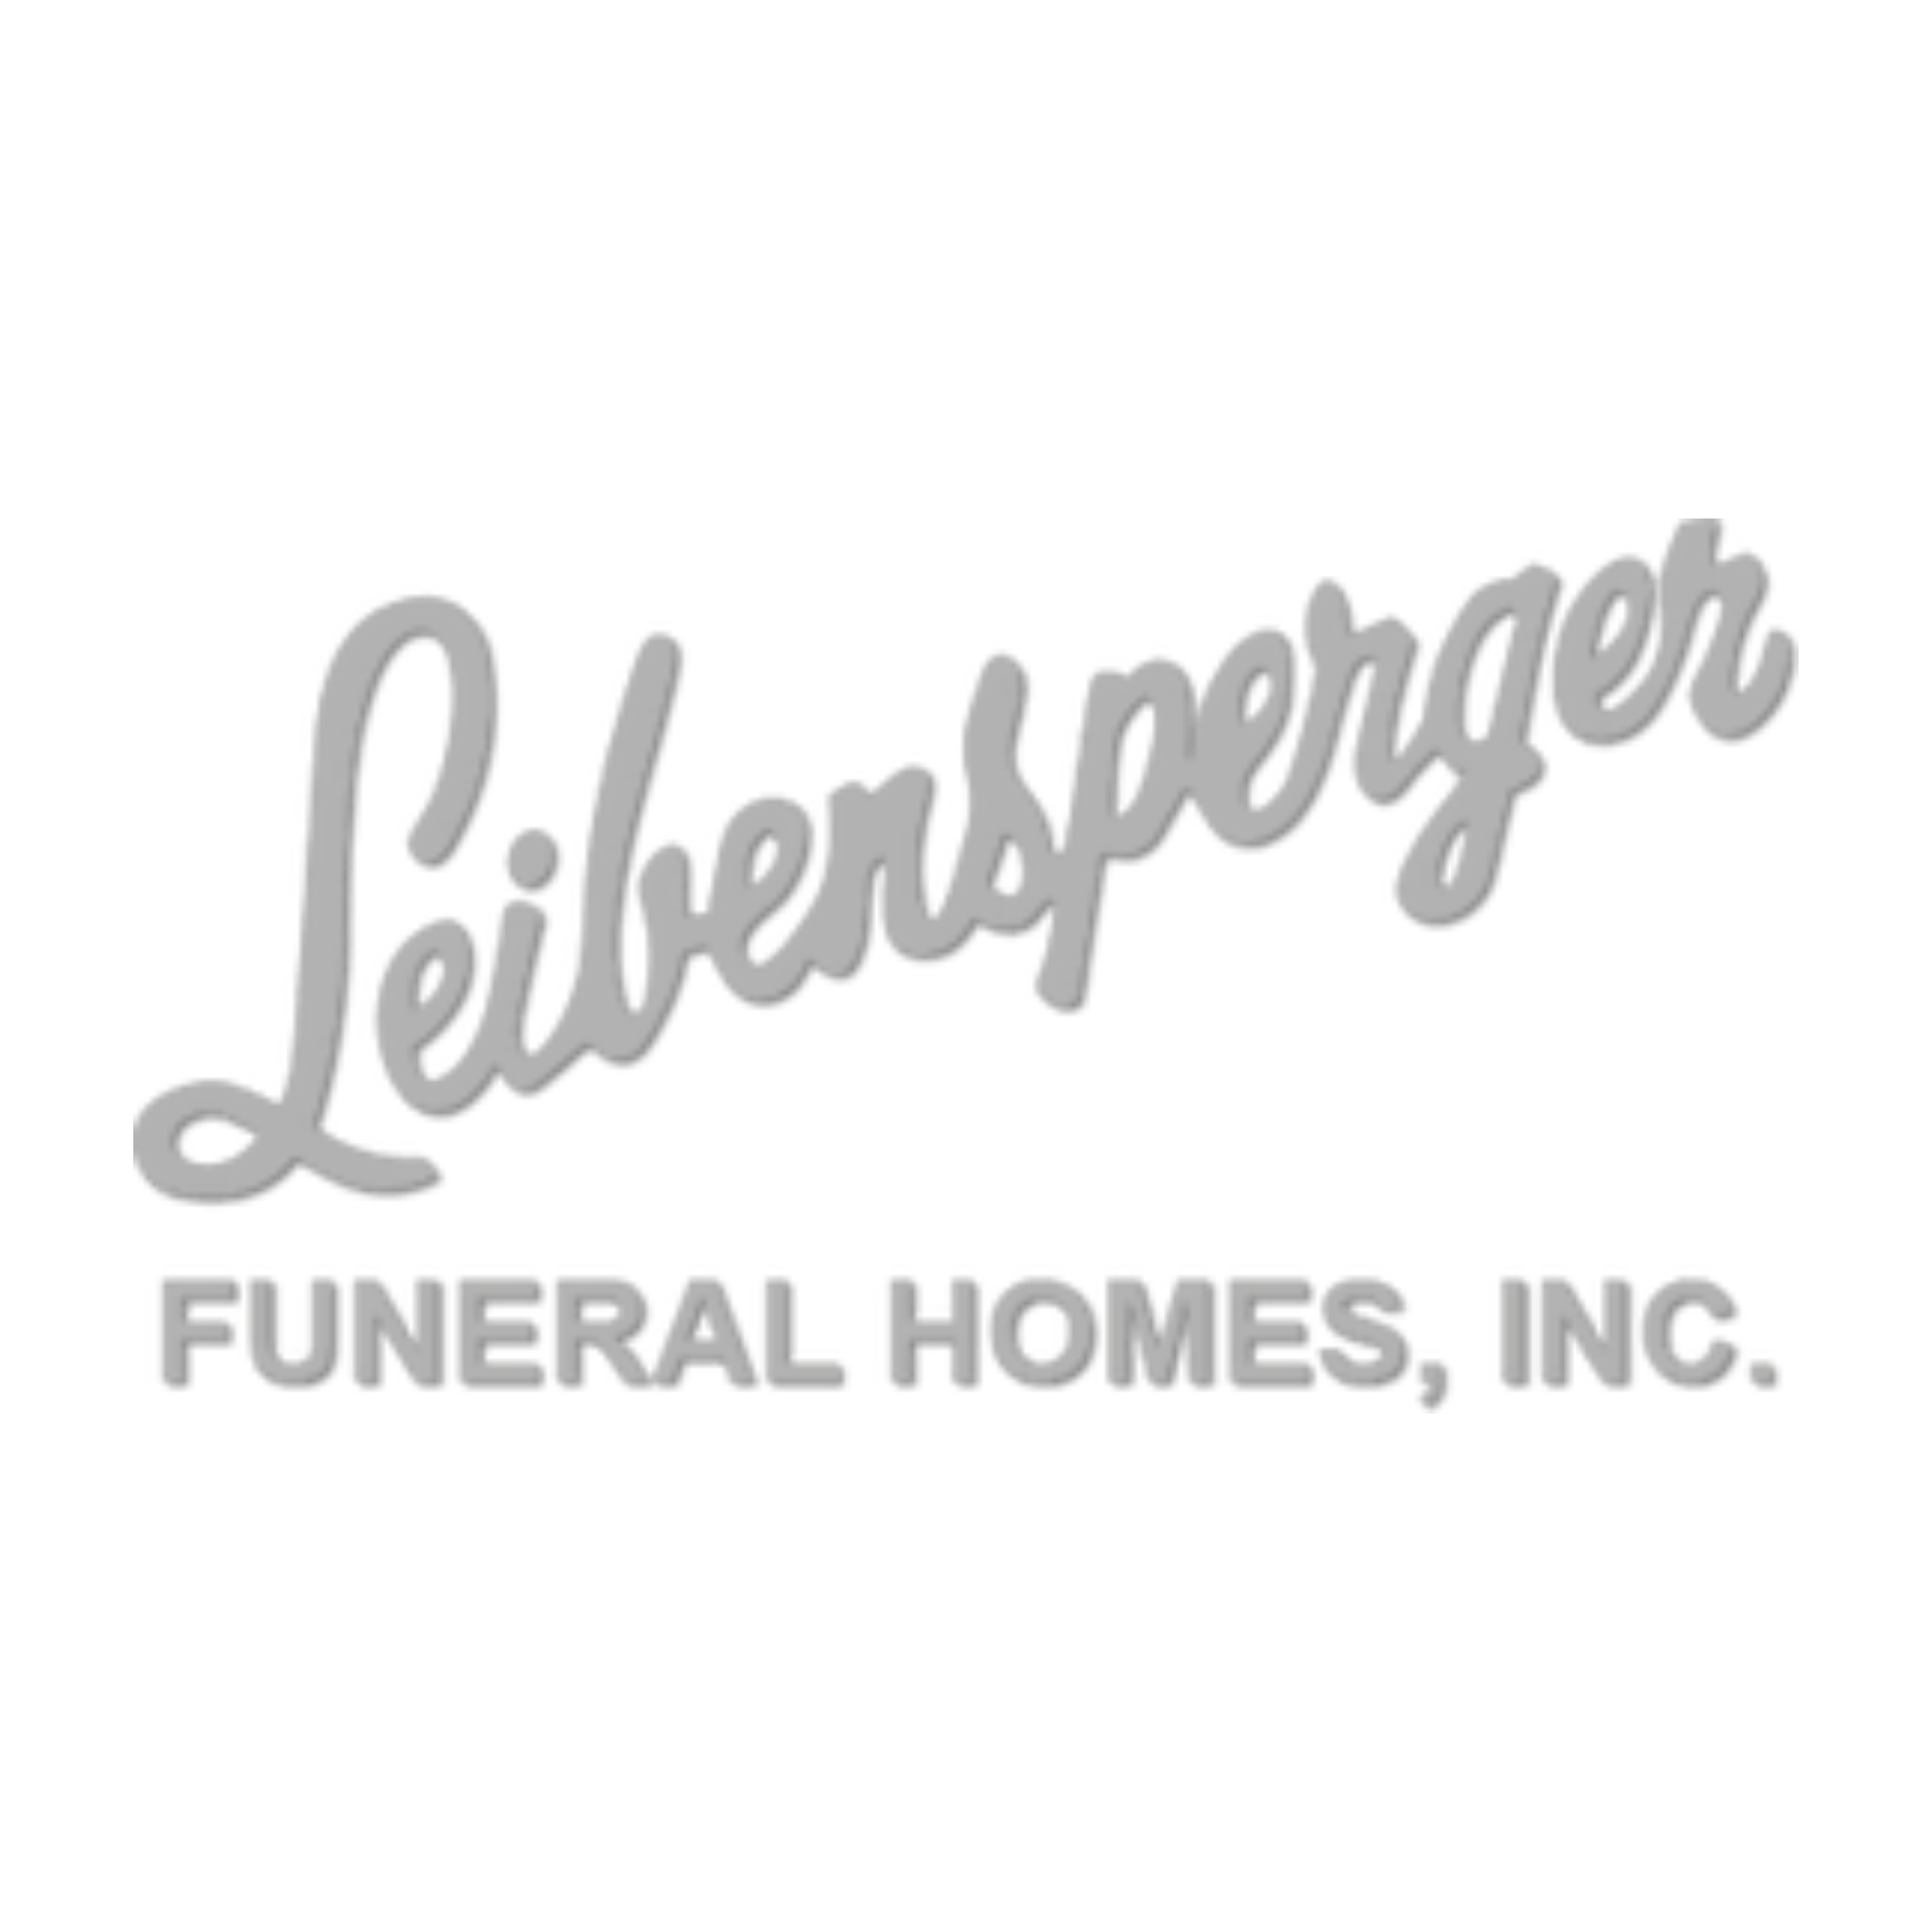 Leibensperger Funeral Homes, Inc.